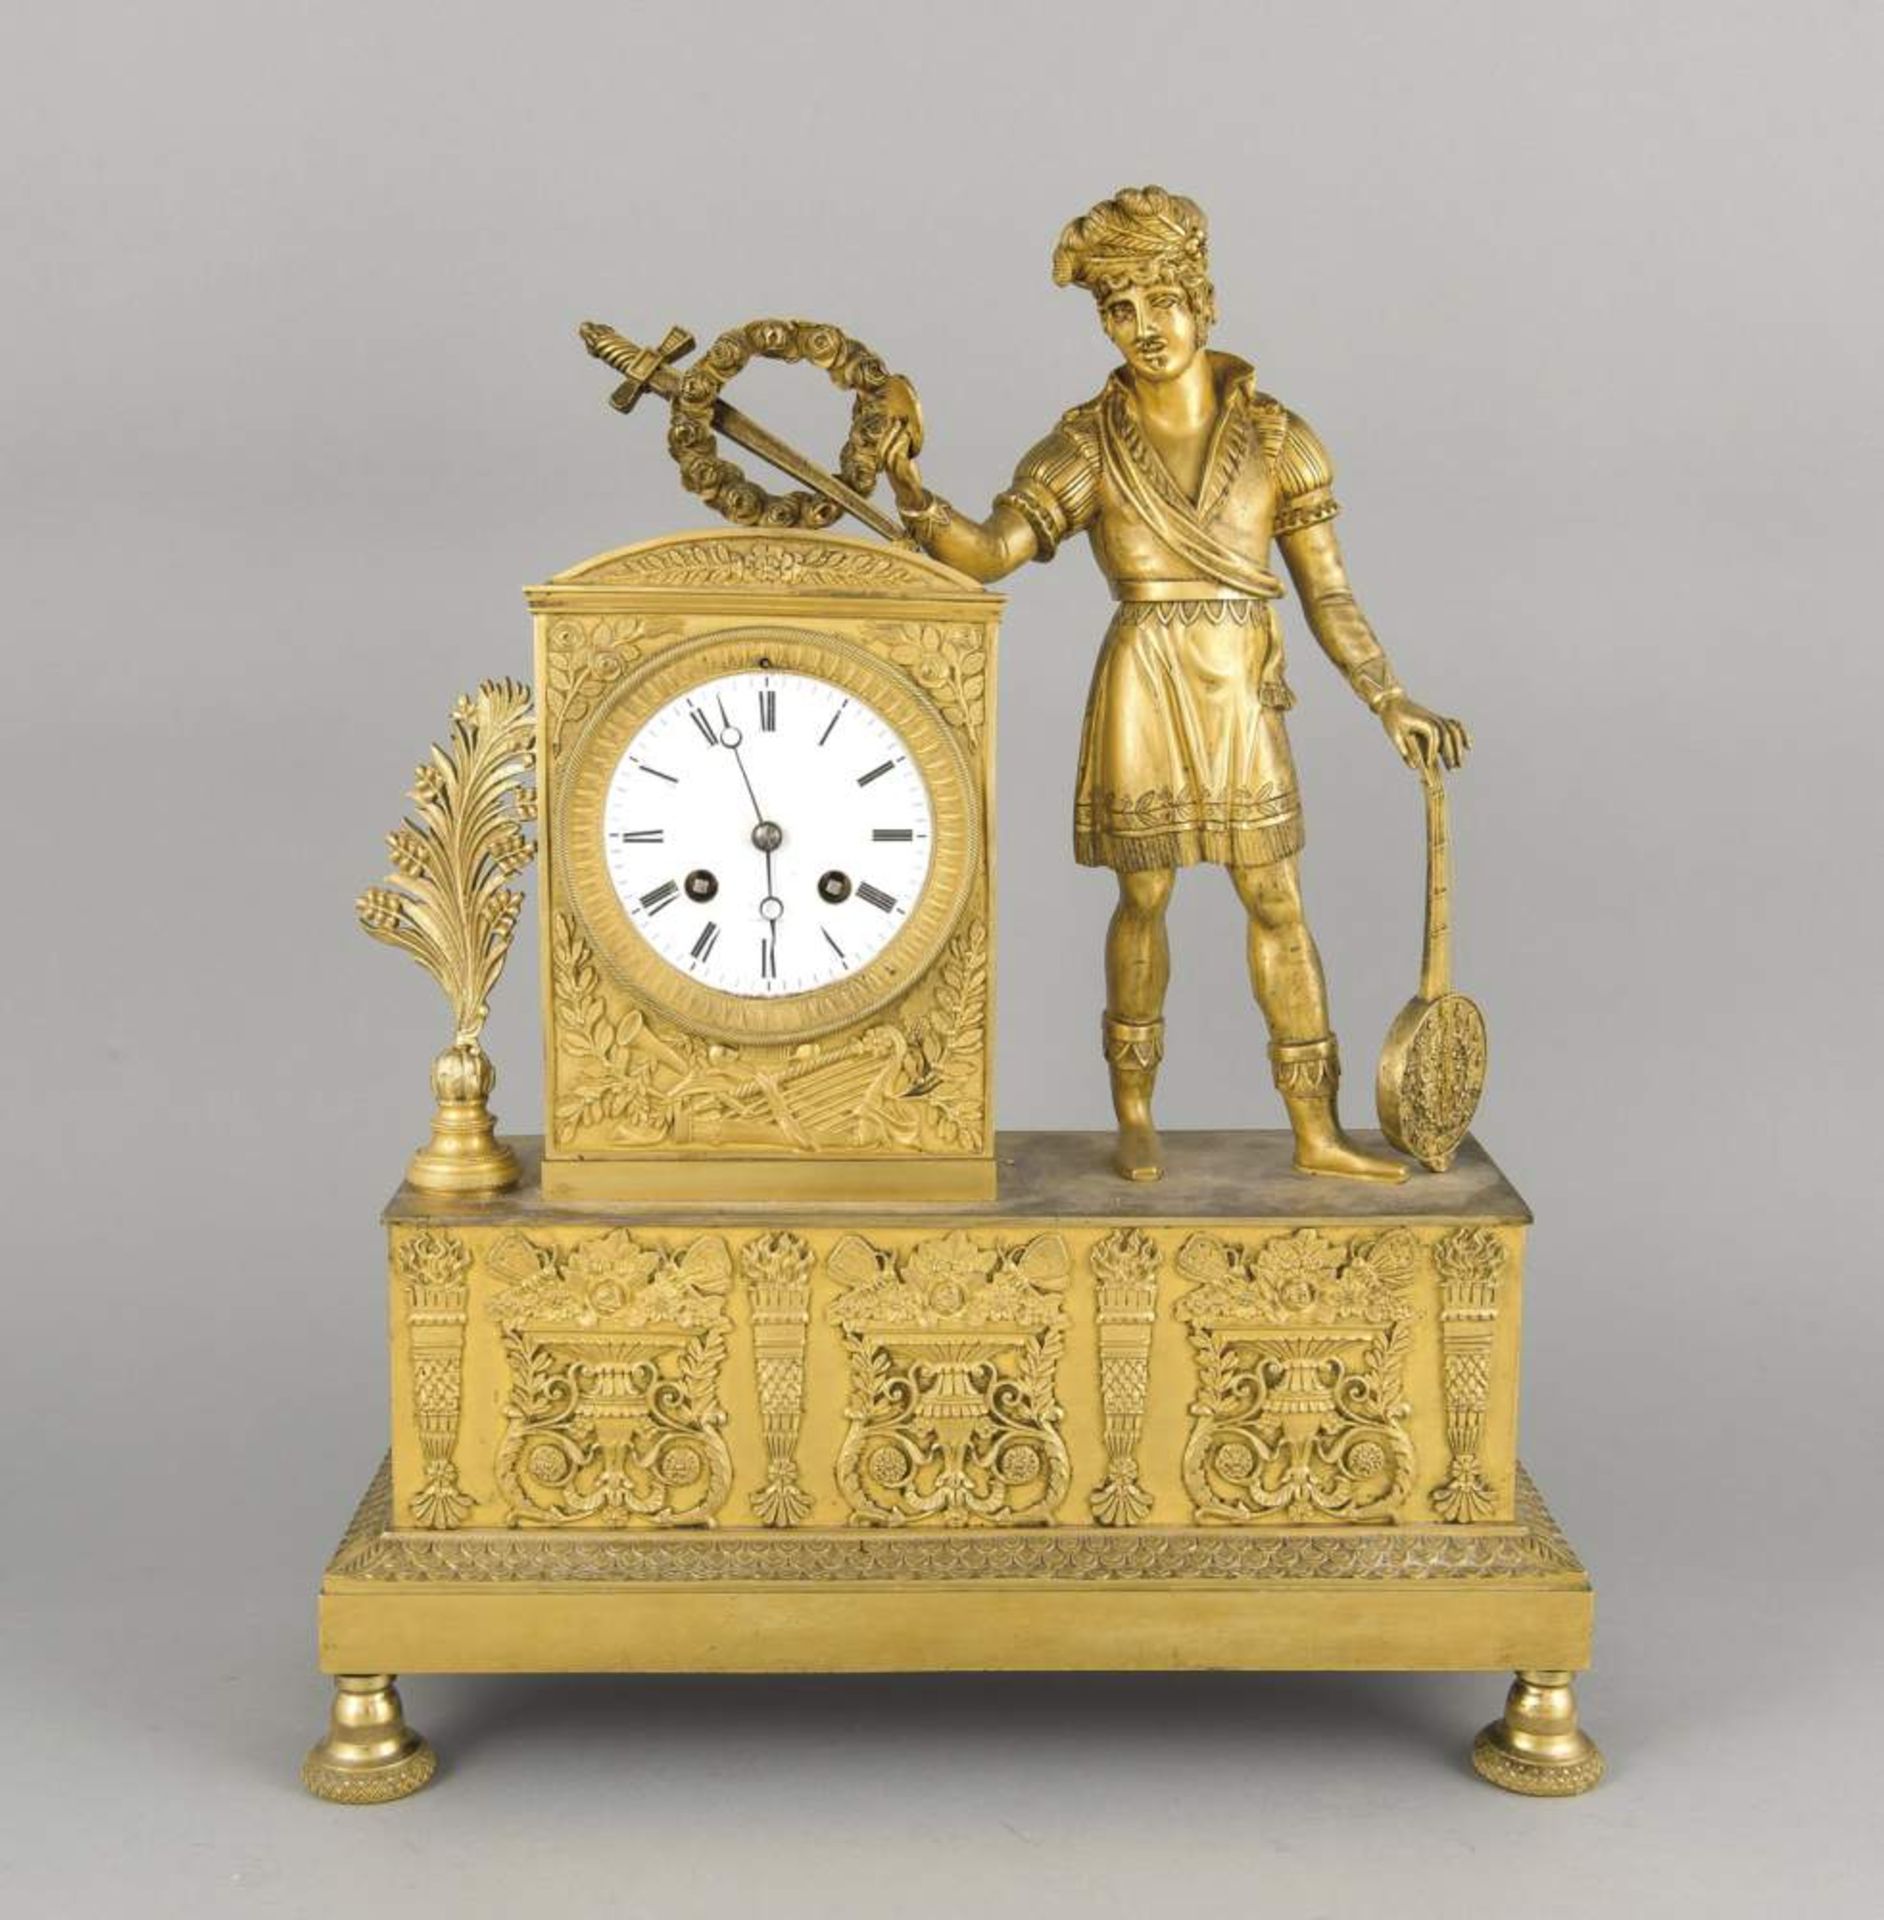 Biedermeier-Figurenpendule, Frankreich Anf. 19. Jh., reich appliziertes Bronzegehäuse tlw.vergoldet,